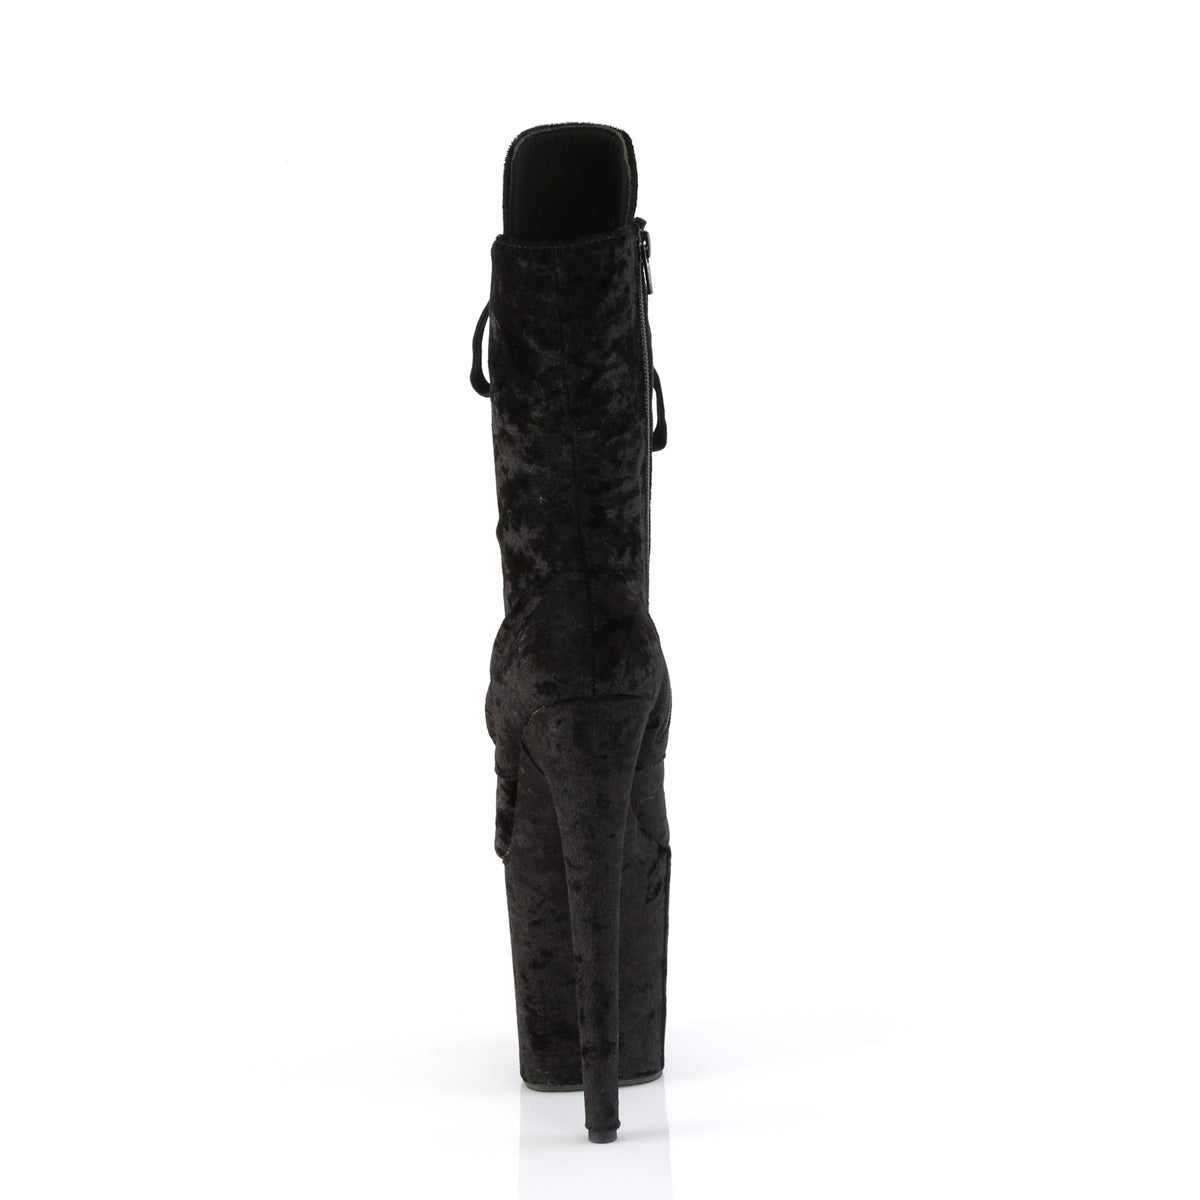 FLAMINGO-1045VEL - Black Velvet Boots